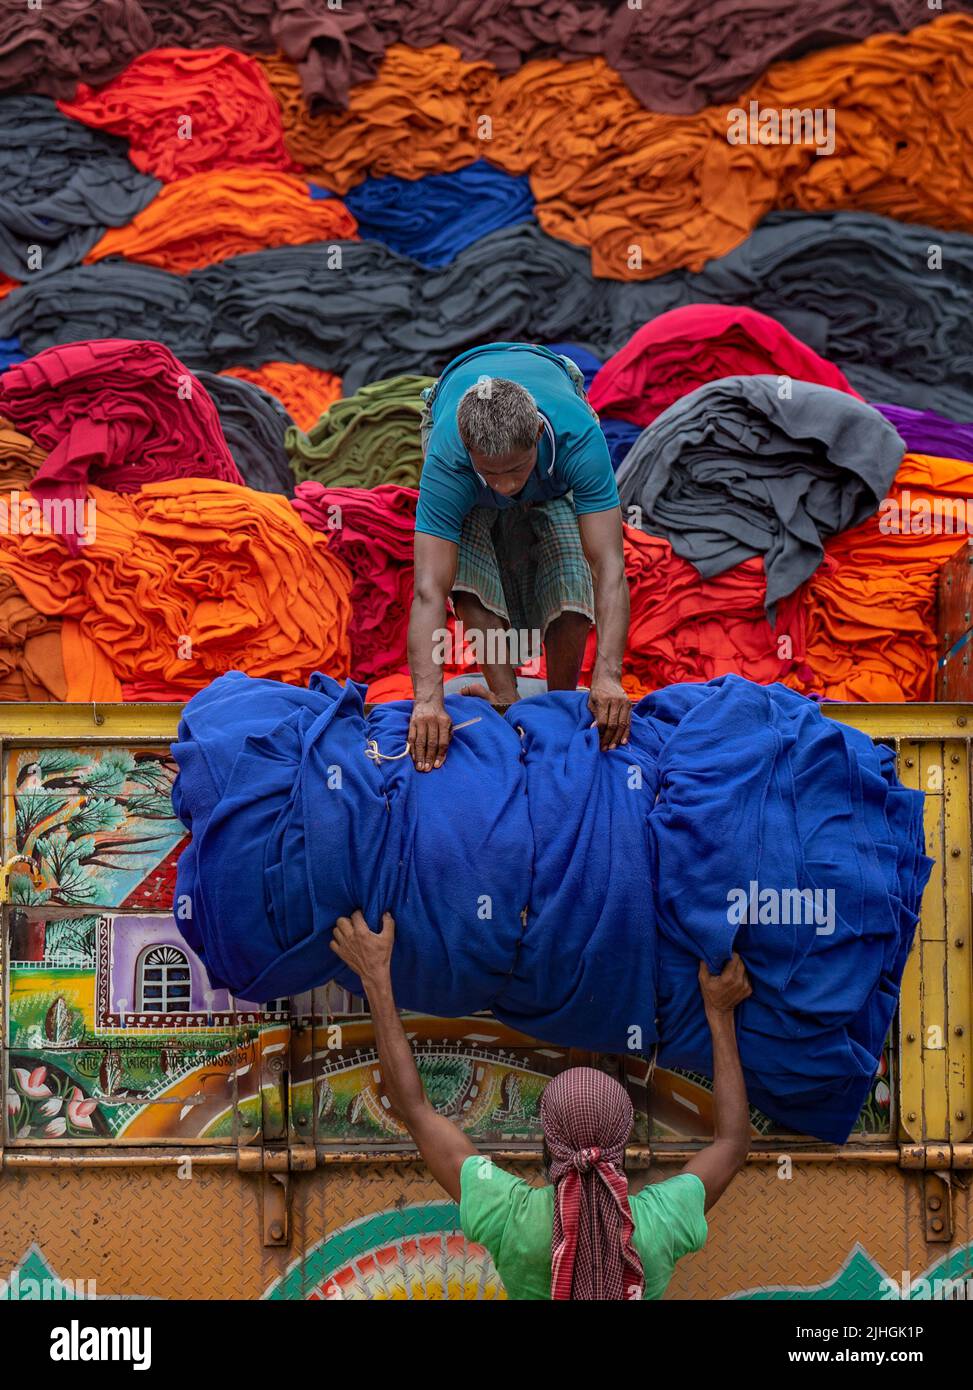 Le coperte colorate vengono caricate sui camion dai lavoratori. Industria tessile in Bangladesh Foto Stock